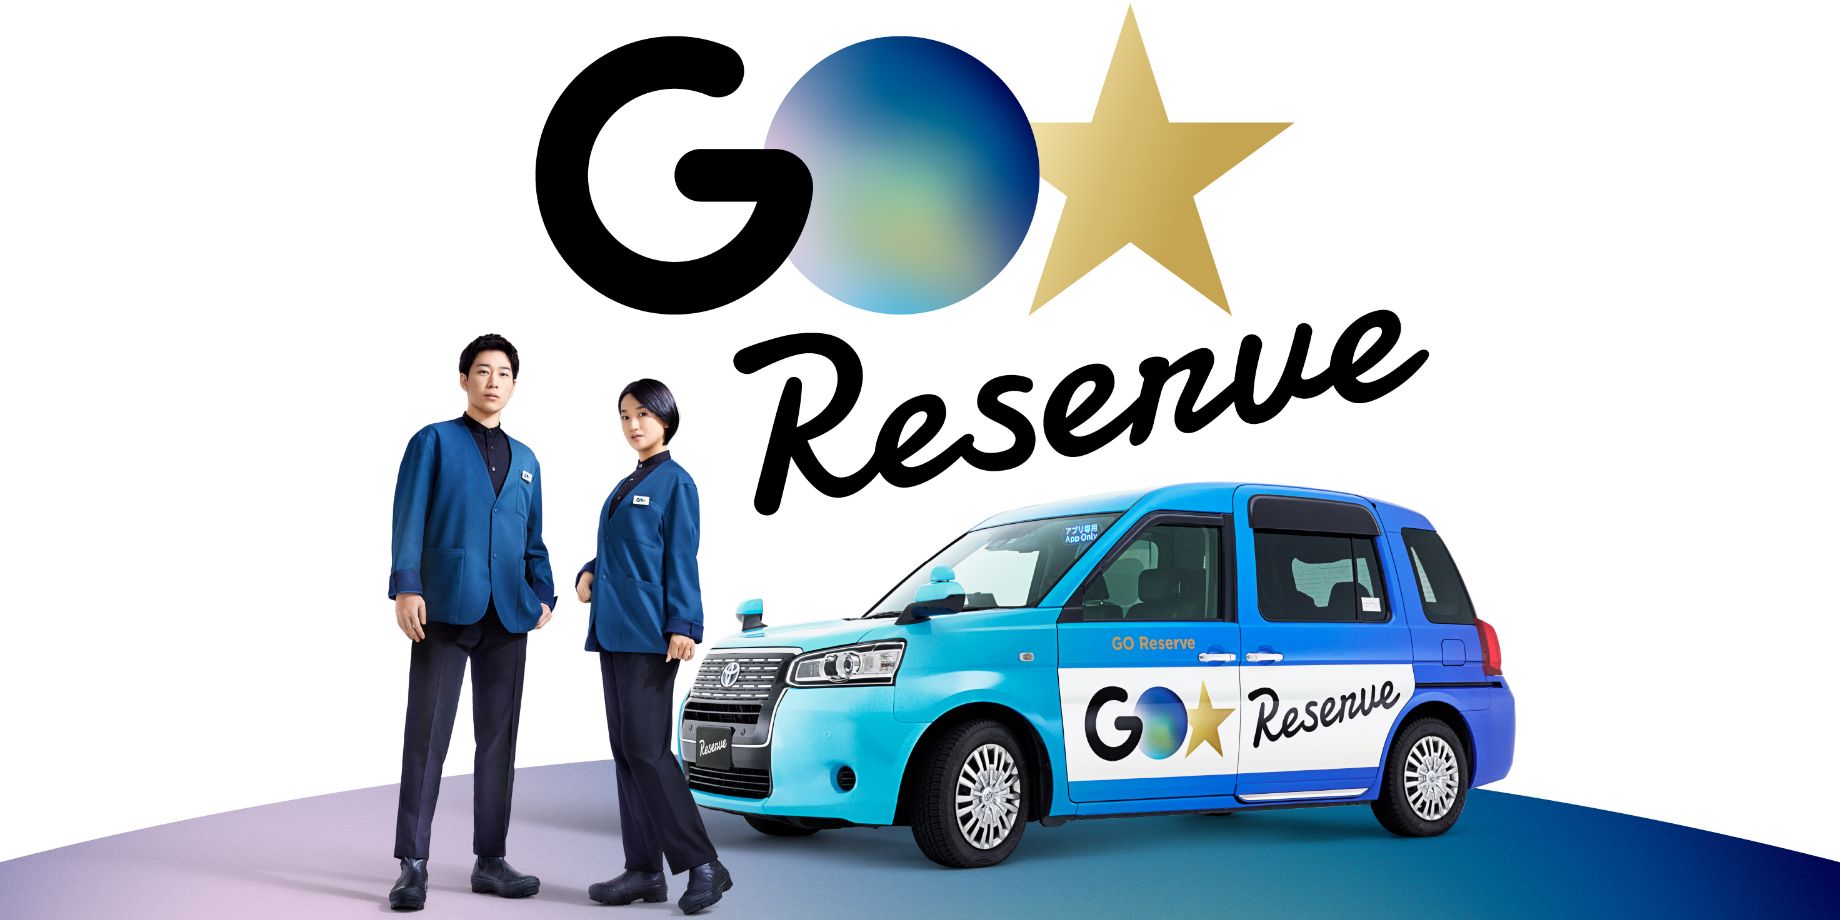 真っ青で目を引く車両と青いジャケット姿の乗務員により、これまでの乗務員のイメージを一新する『GO Reserve』